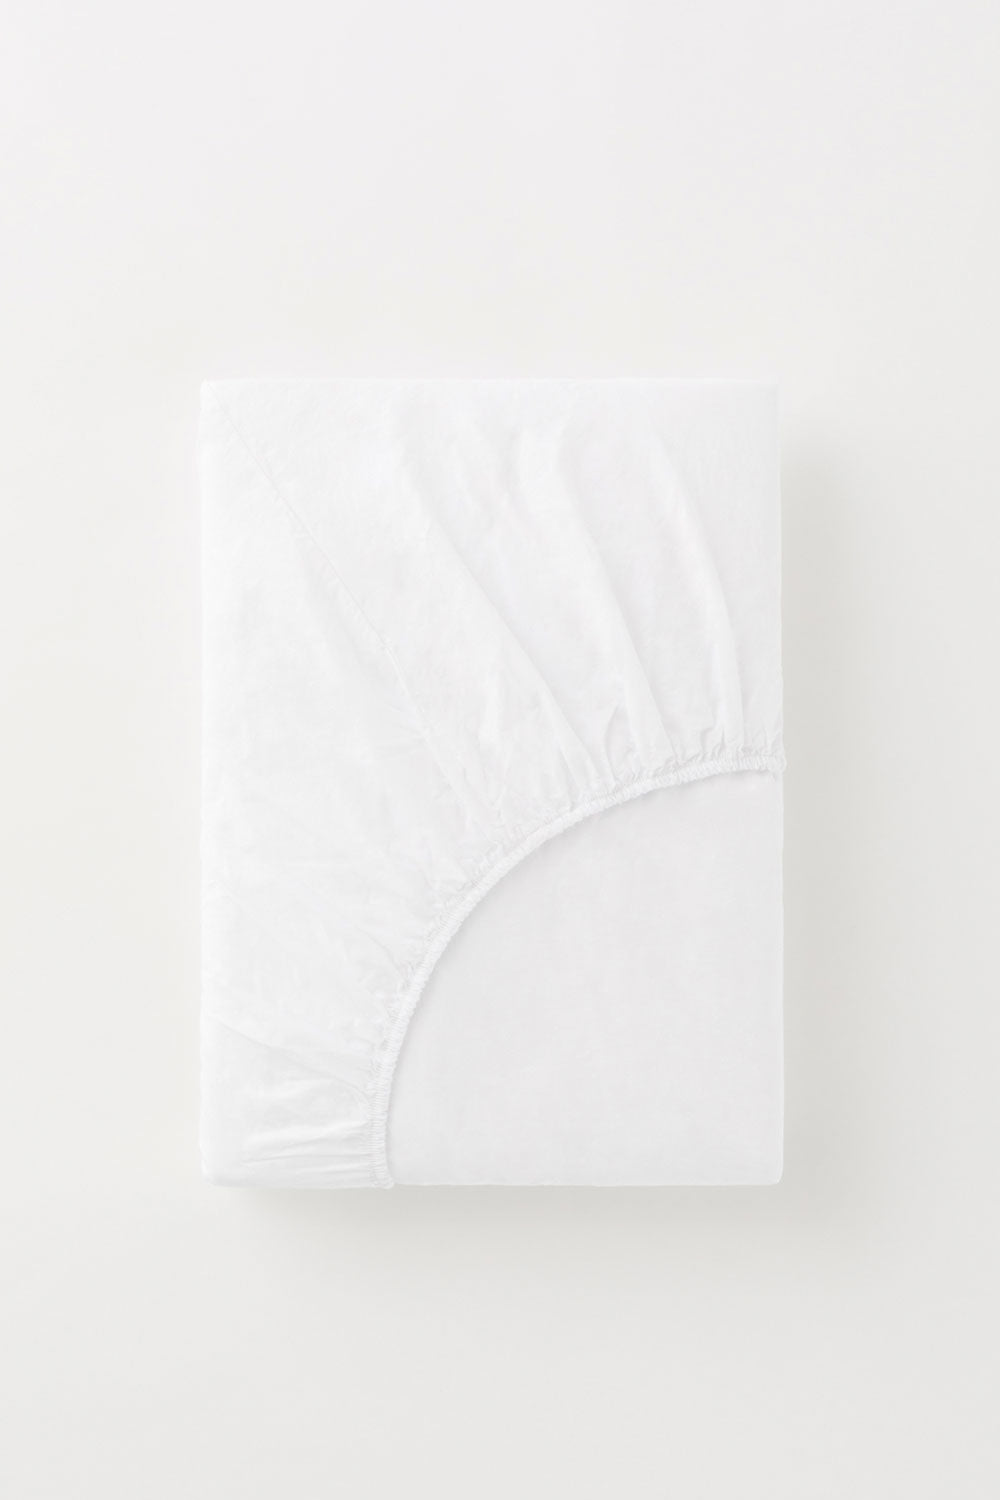 Faconlagen (160*200*35 cm), Bright White